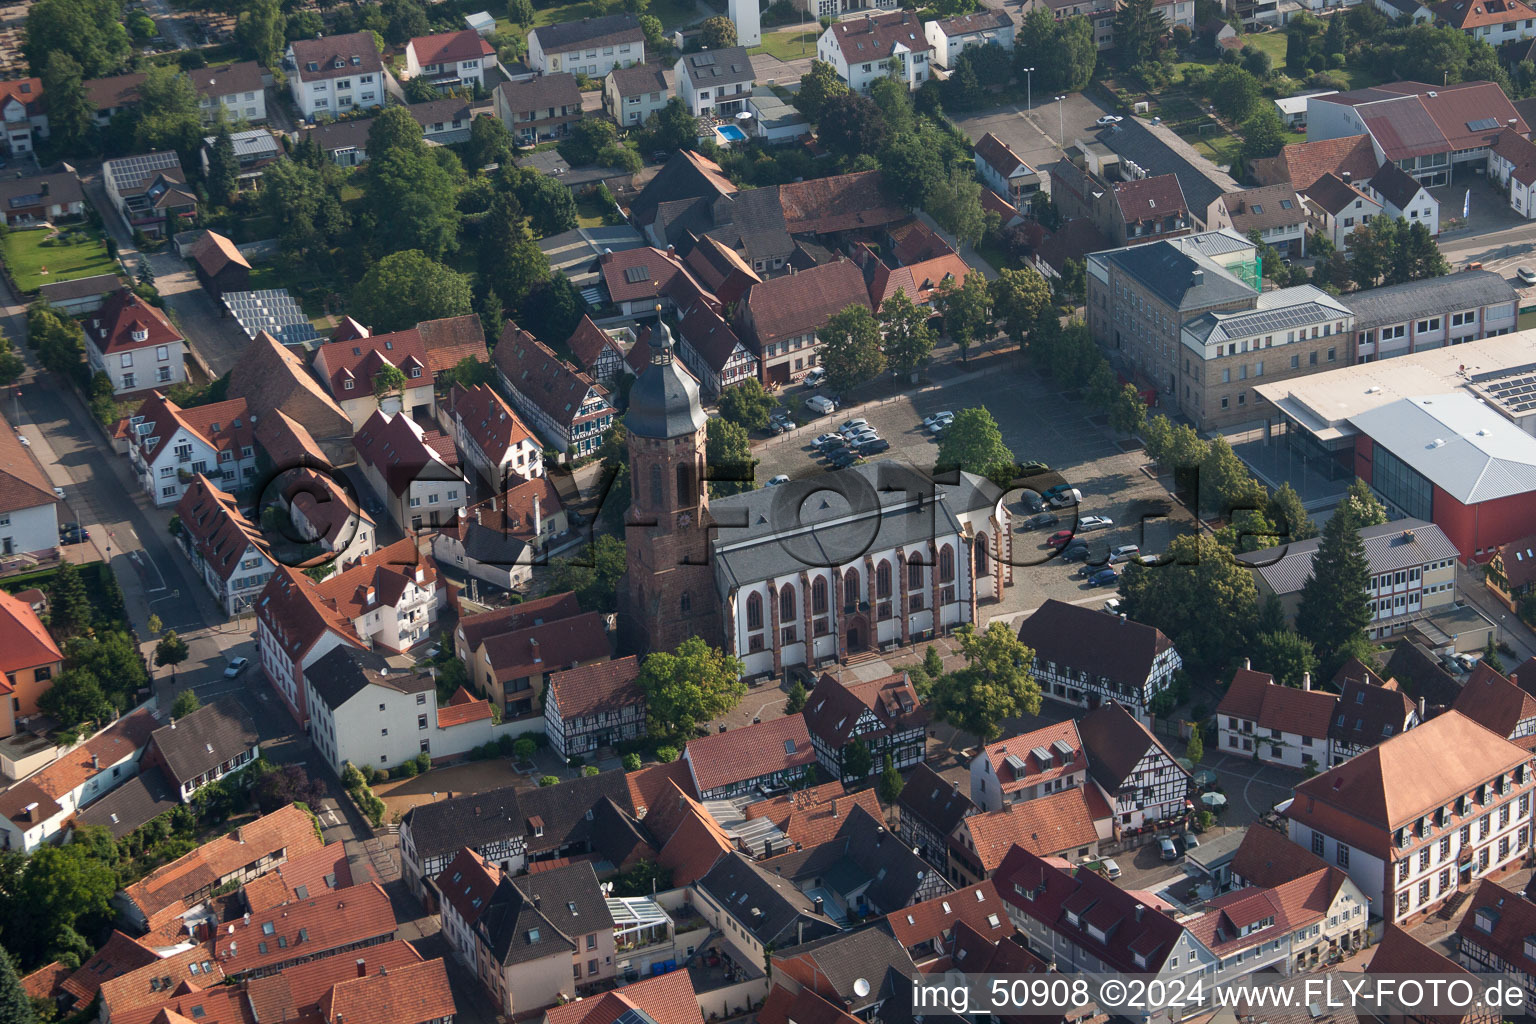 Luftbild von Kandel. kirche Marktplatz, Plätzl im Bundesland Rheinland-Pfalz, Deutschland